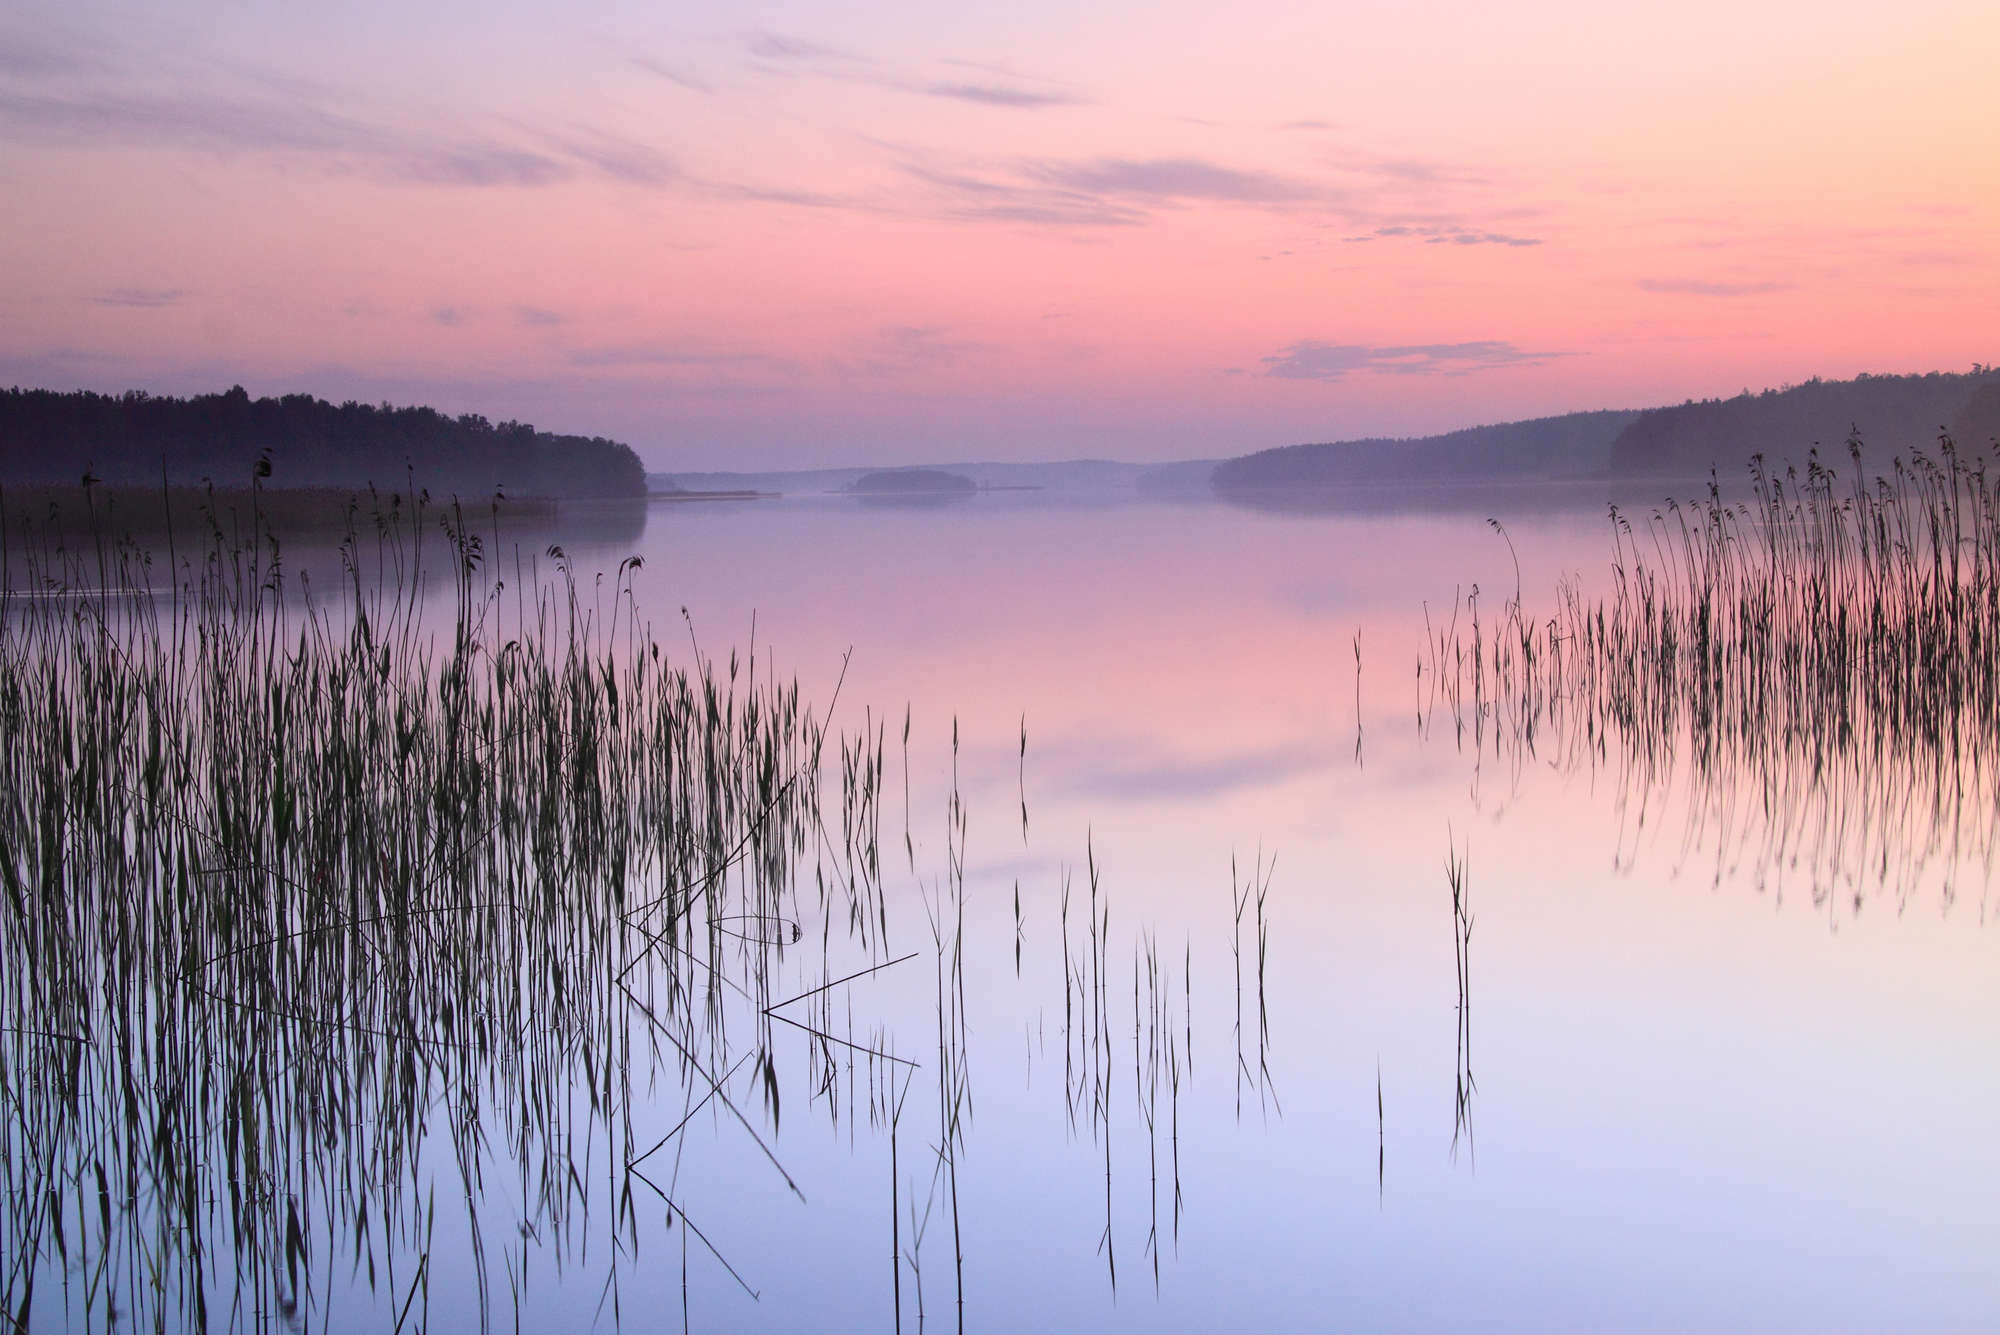             Fotomurali naturalistico con lago e canne di sera, su pile liscio di prima qualità
        